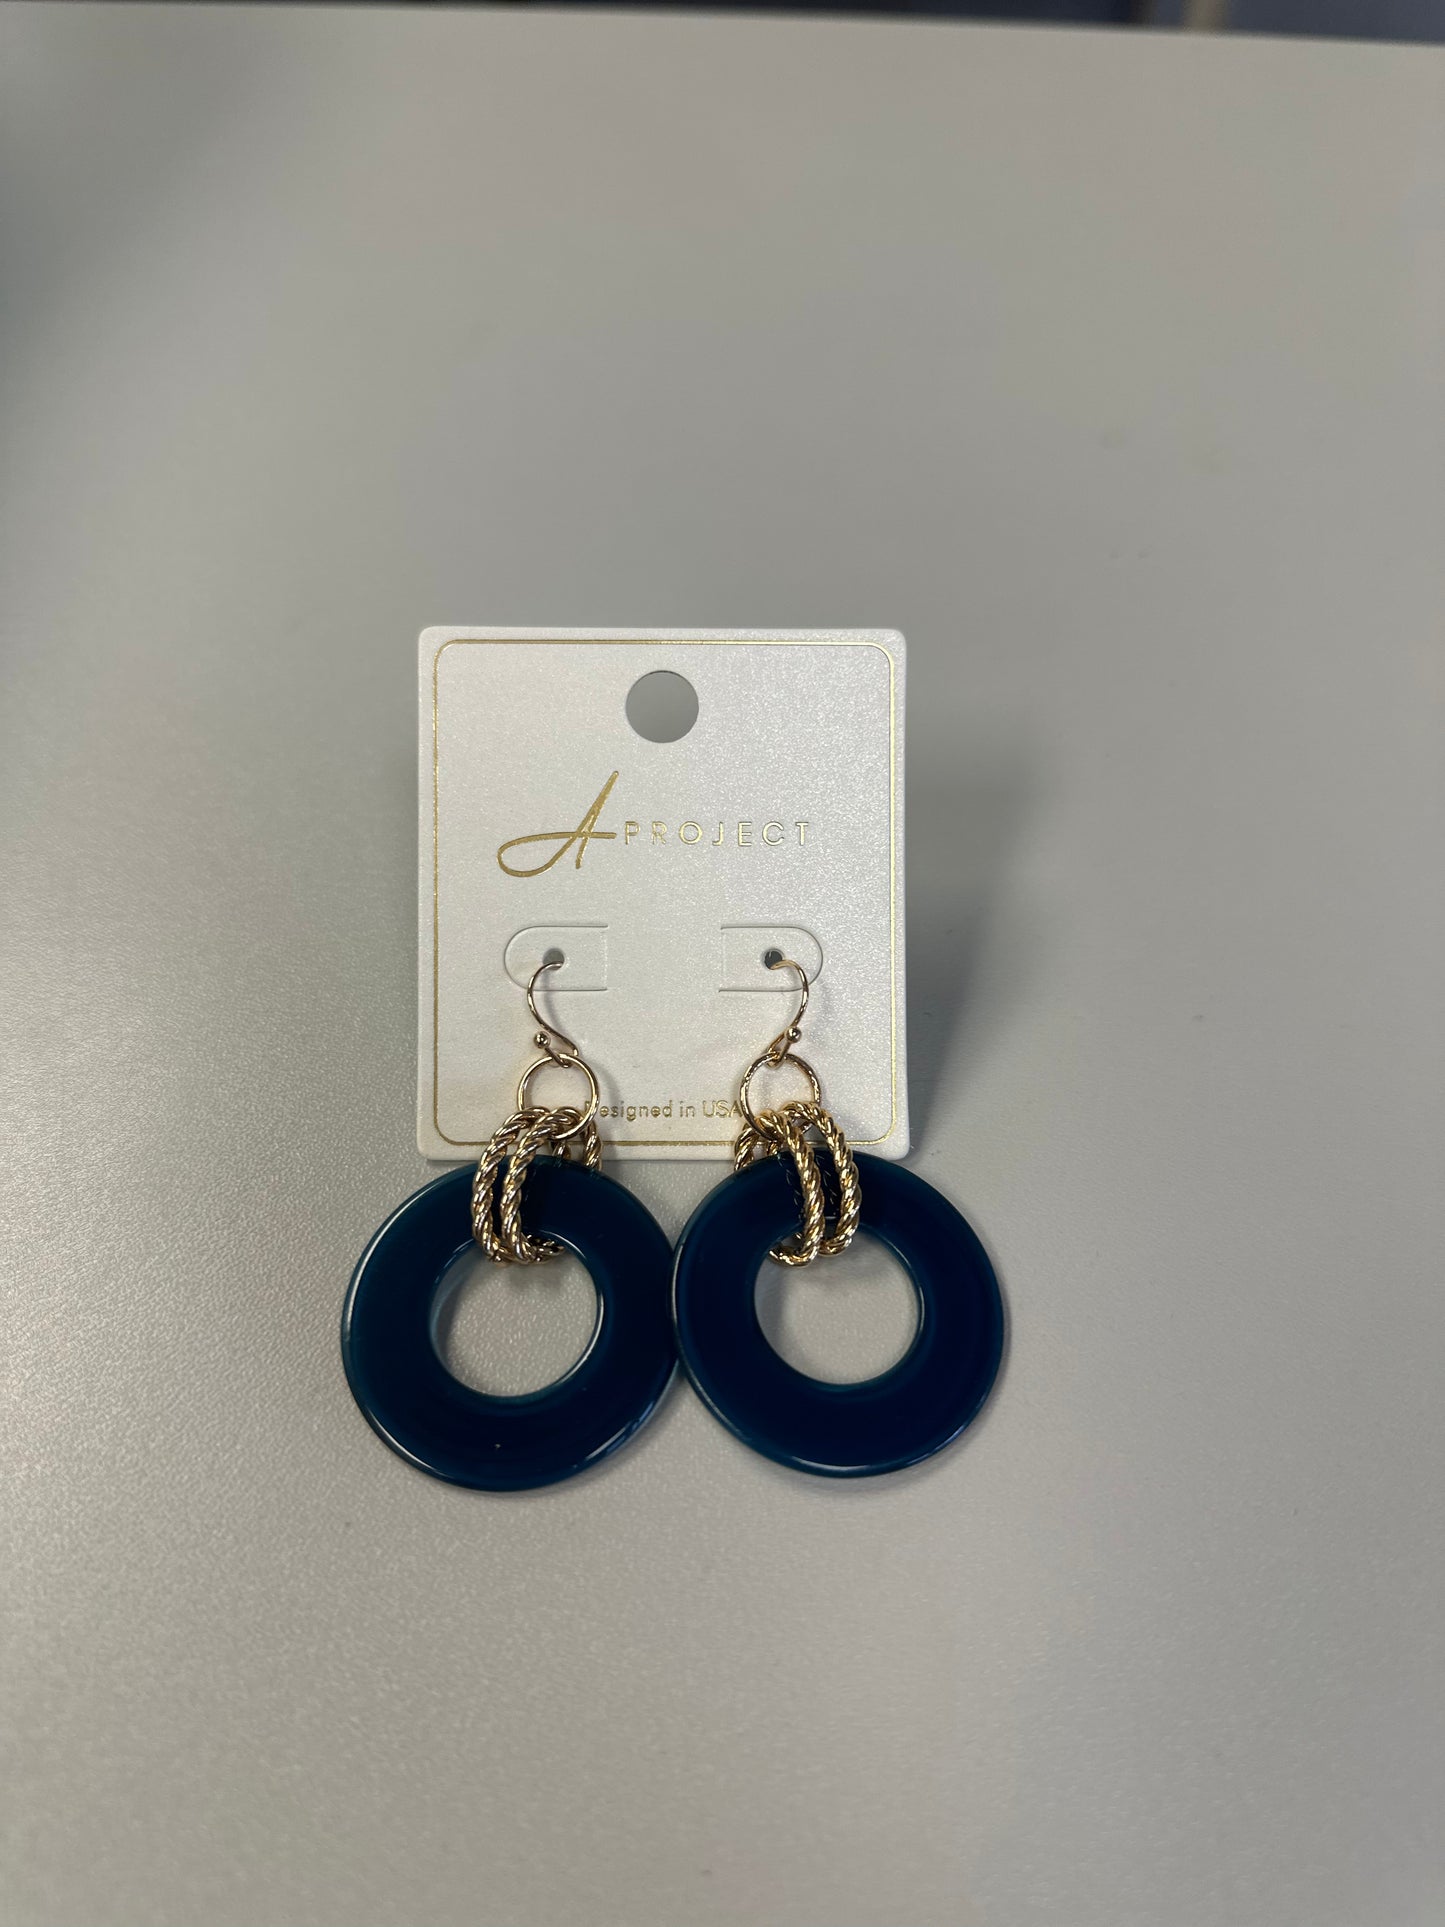 A Project Earrings